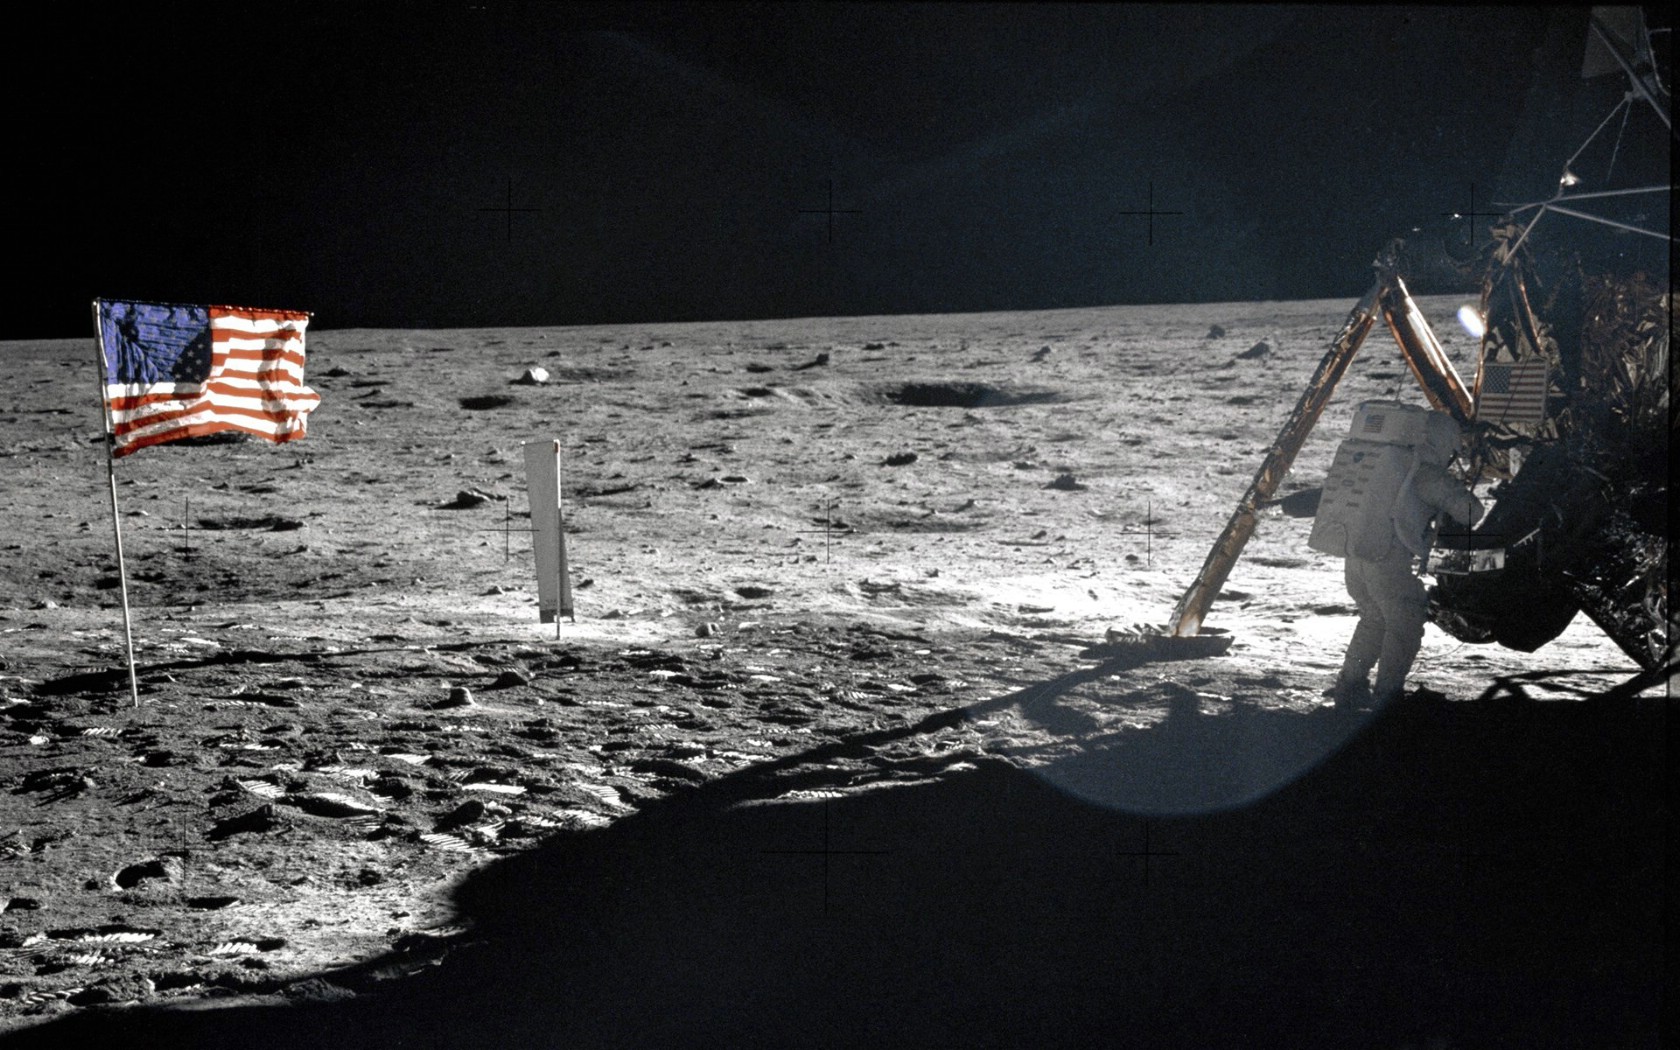 壁纸1680x1050One Giant Leap for Mankind  Neil Armstrong On The Moon 登月舱旁的阿姆斯壮壁纸 阿波罗11号登月40周年纪念壁纸壁纸 阿波罗11号登月40周年纪念壁纸图片 阿波罗11号登月40周年纪念壁纸素材 人文壁纸 人文图库 人文图片素材桌面壁纸